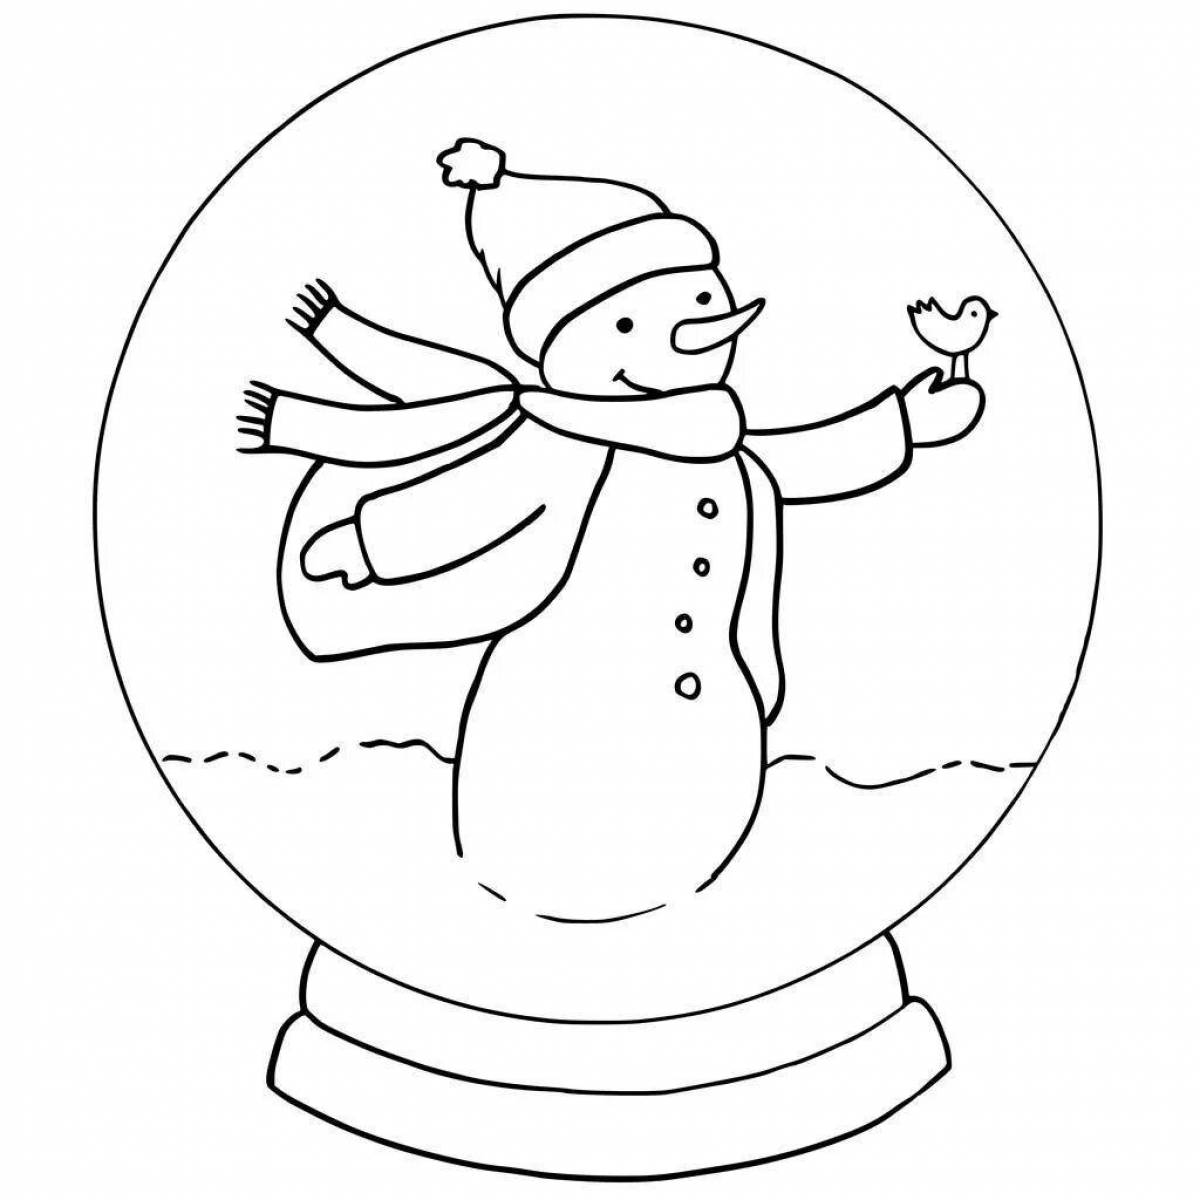 Adorable coloring book snowman in a balloon